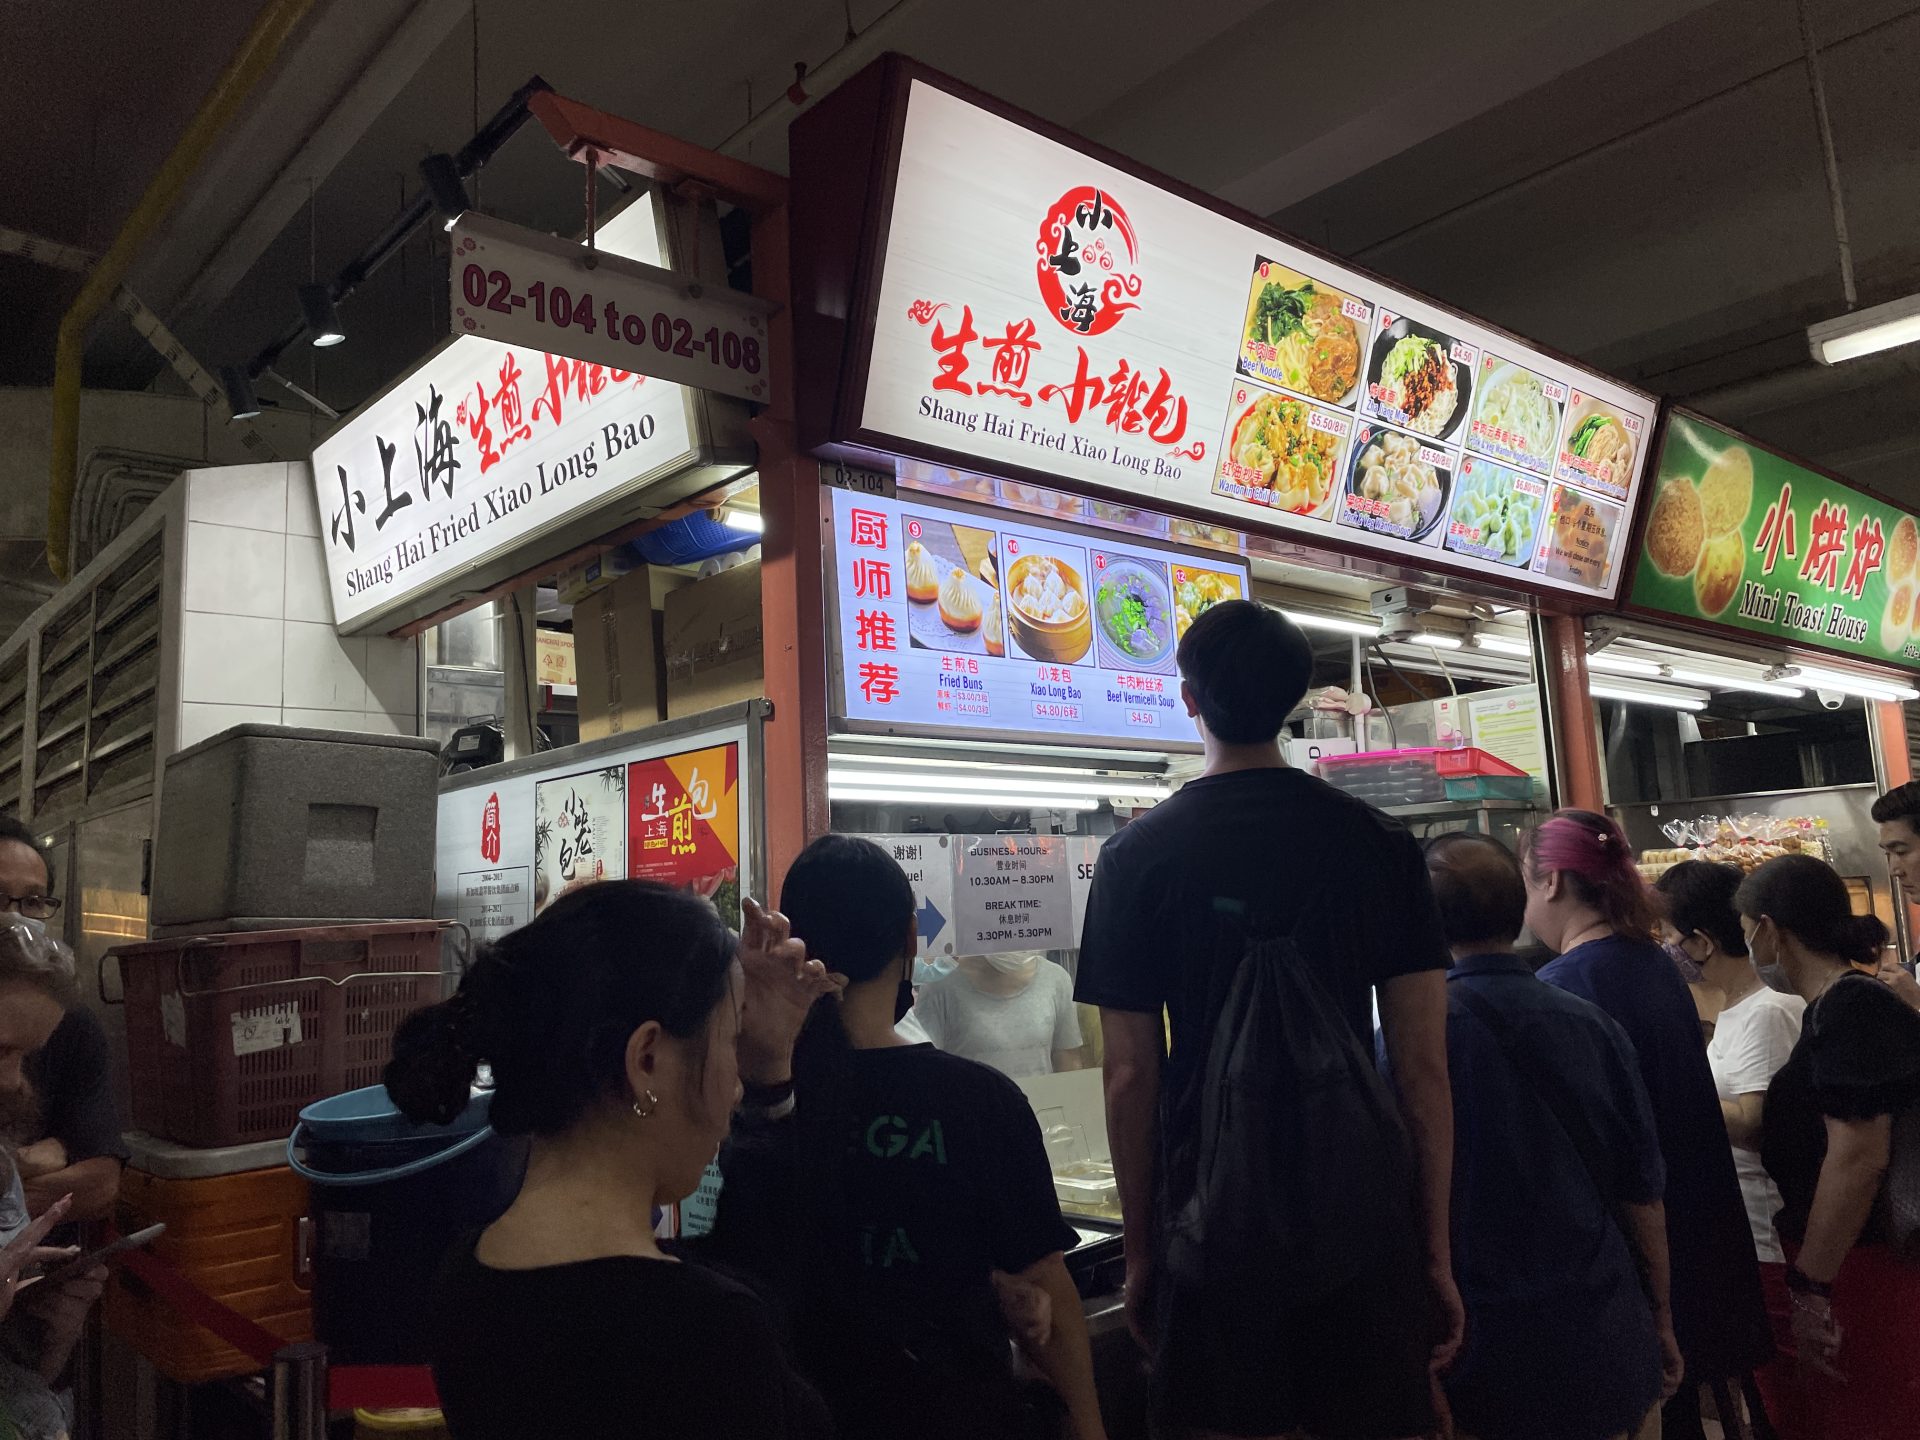 Shang Hai Fried Xiao Long Bao - storefront